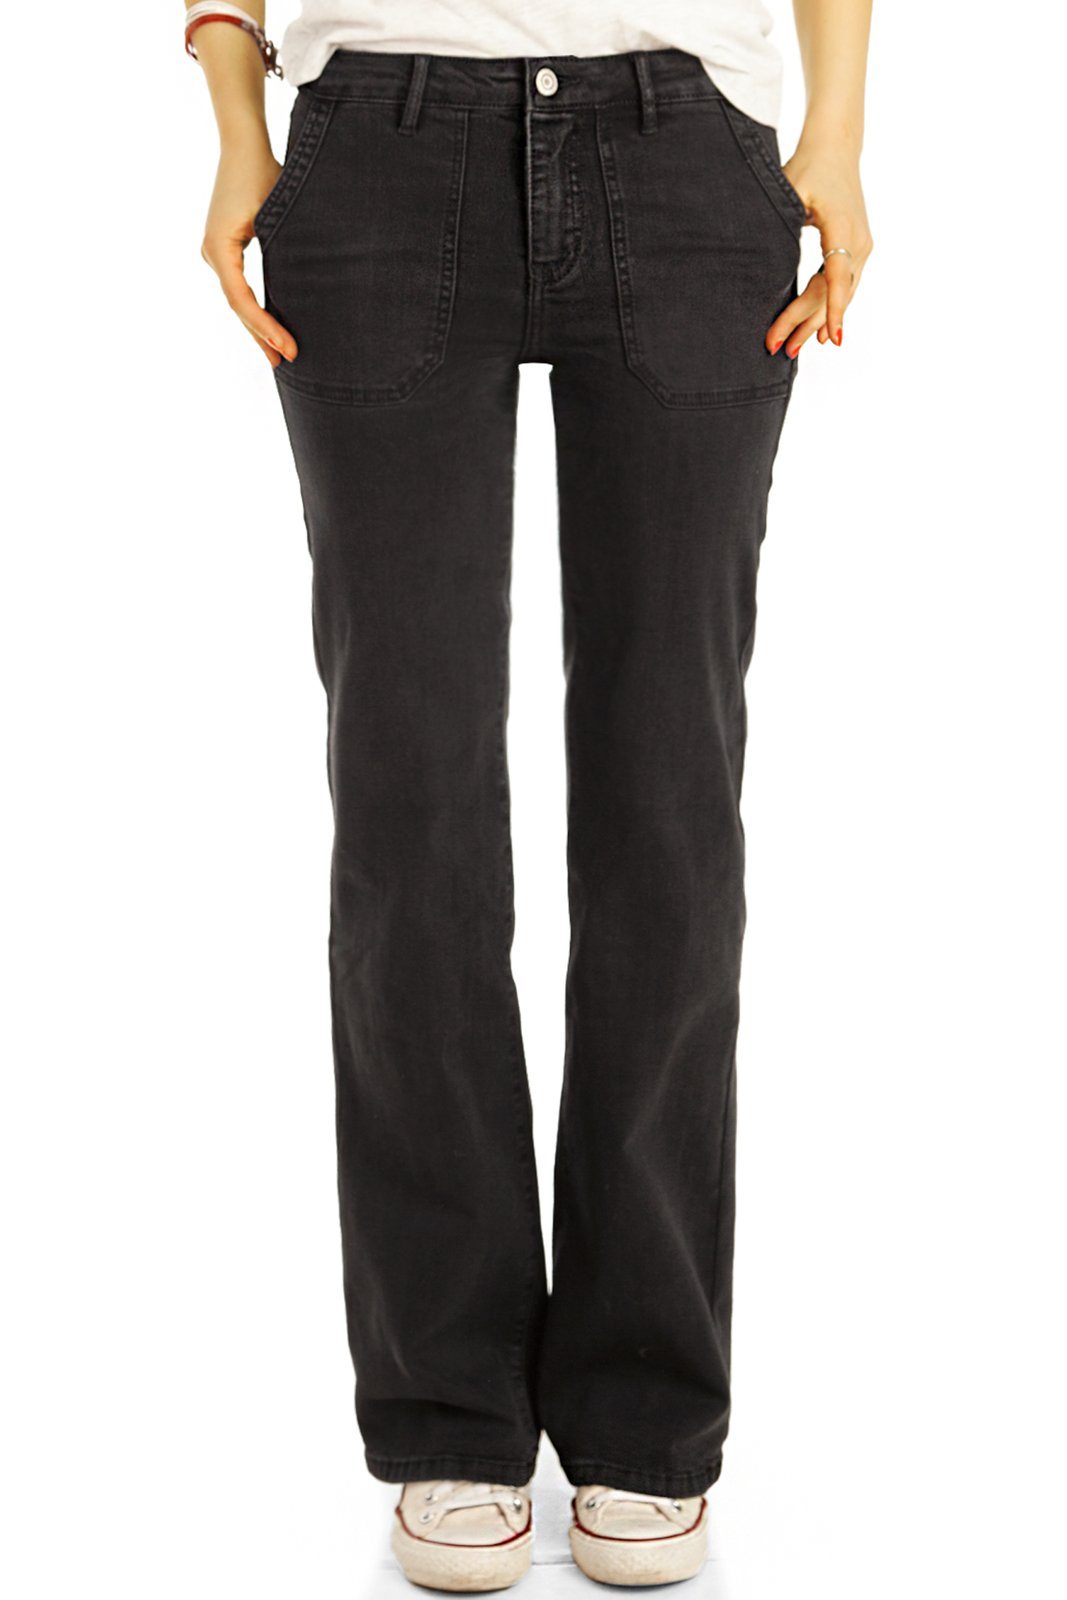 be styled Bootcut-Jeans Bootcut Jeans, medium waist Hosen straight Passform - Damen - j31k mit Stretch-Anteil, 5-Pocket-Style schwarz